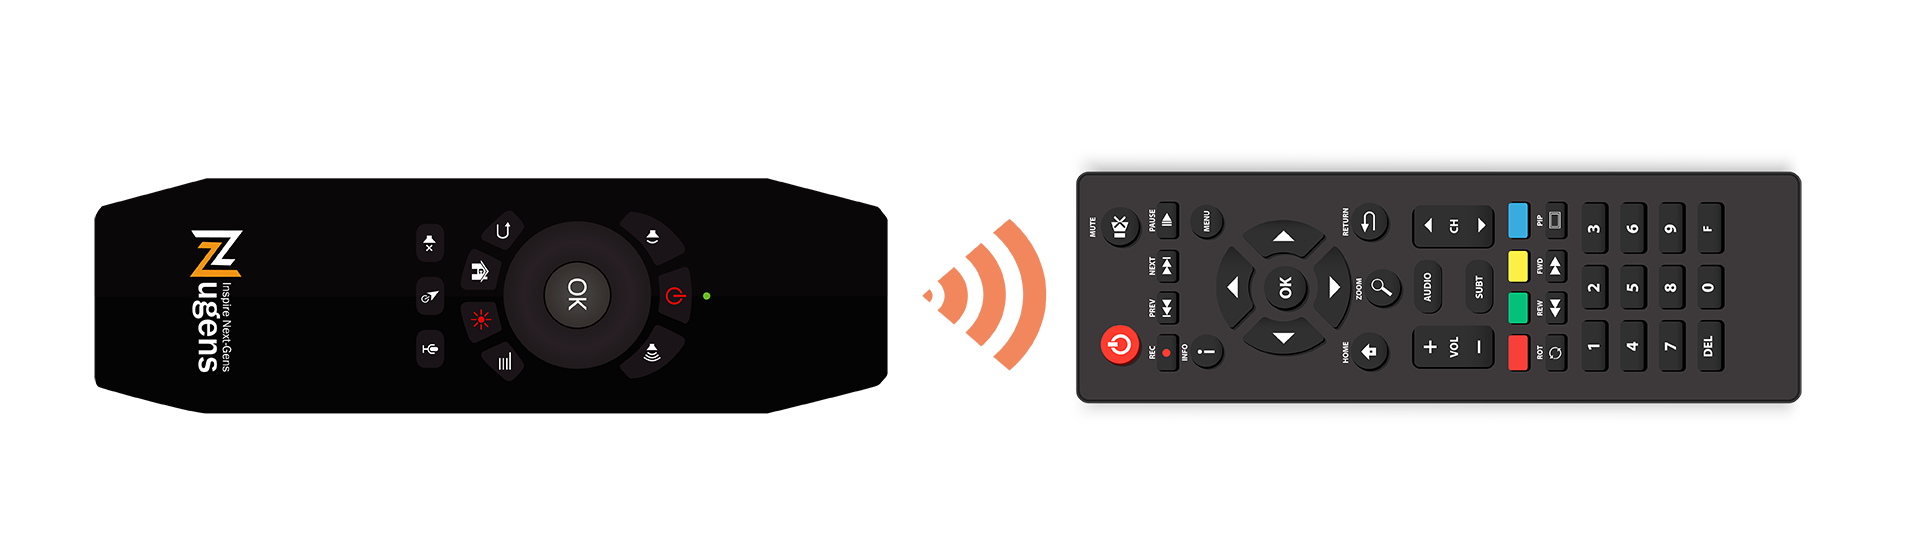 遙控無線語音簡報鍵鼠紅外線學習功能示意圖